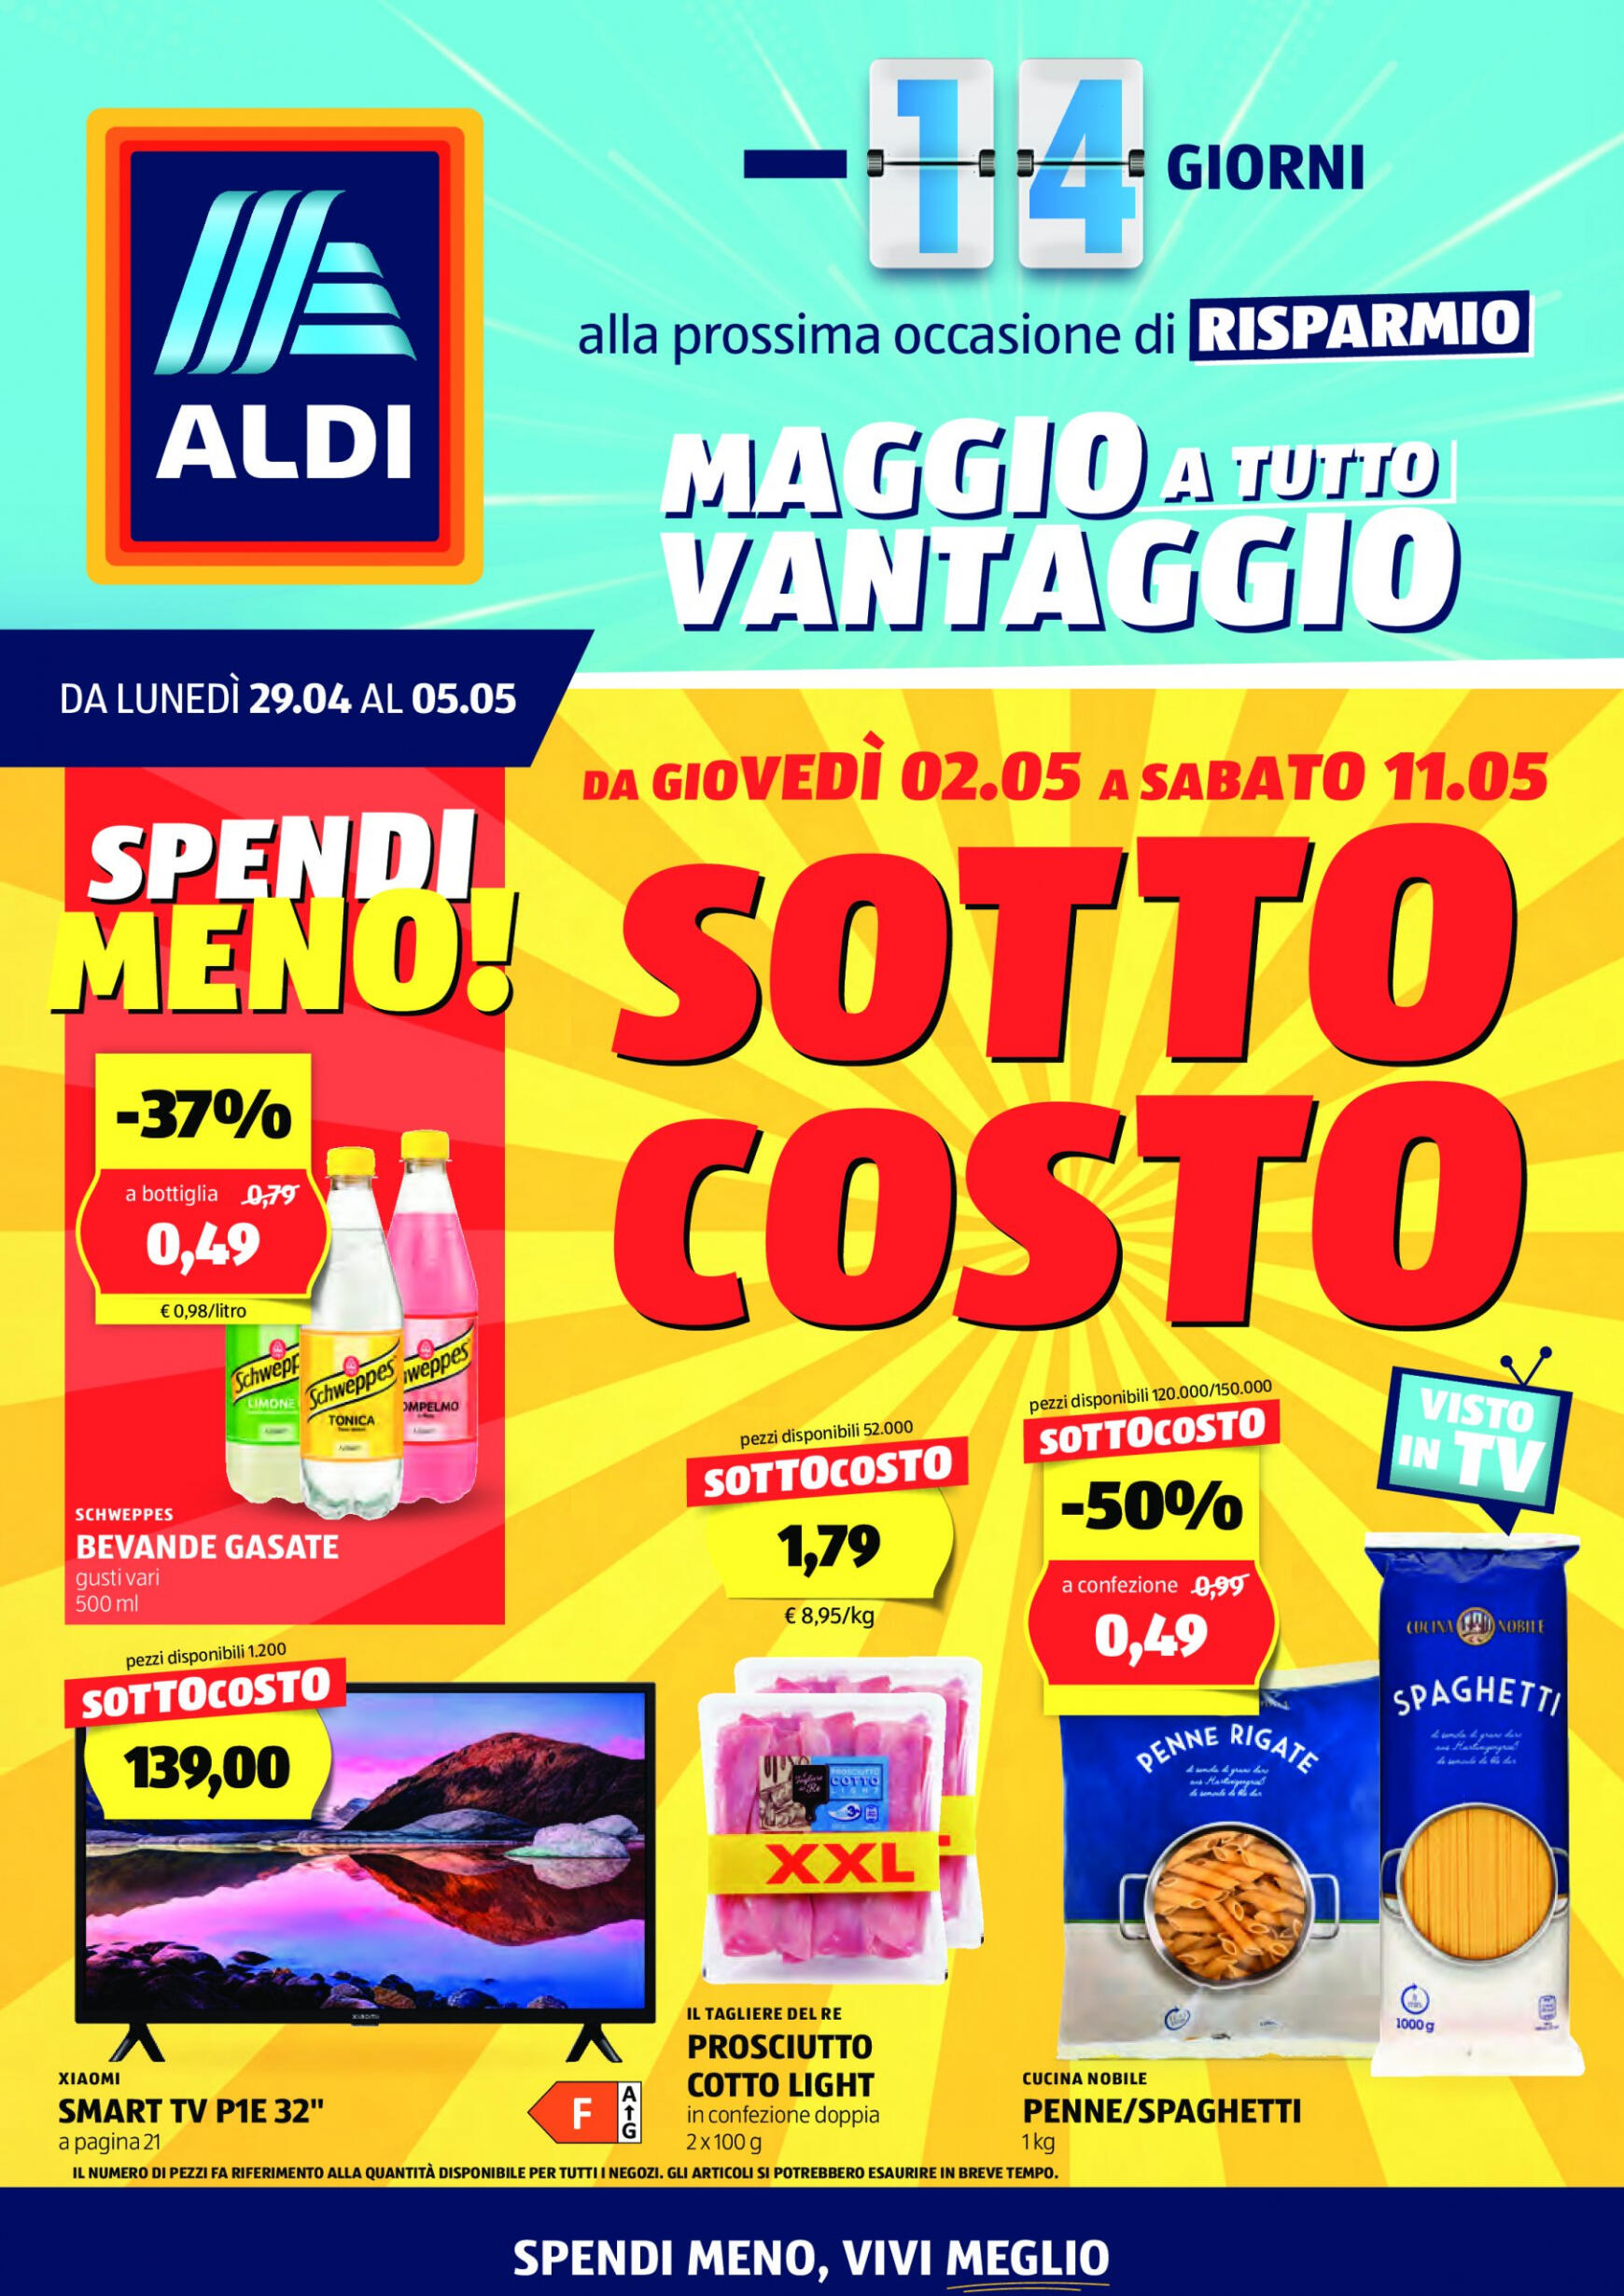 aldi - Nuovo volantino ALDI 29.04. - 05.05. - page: 1